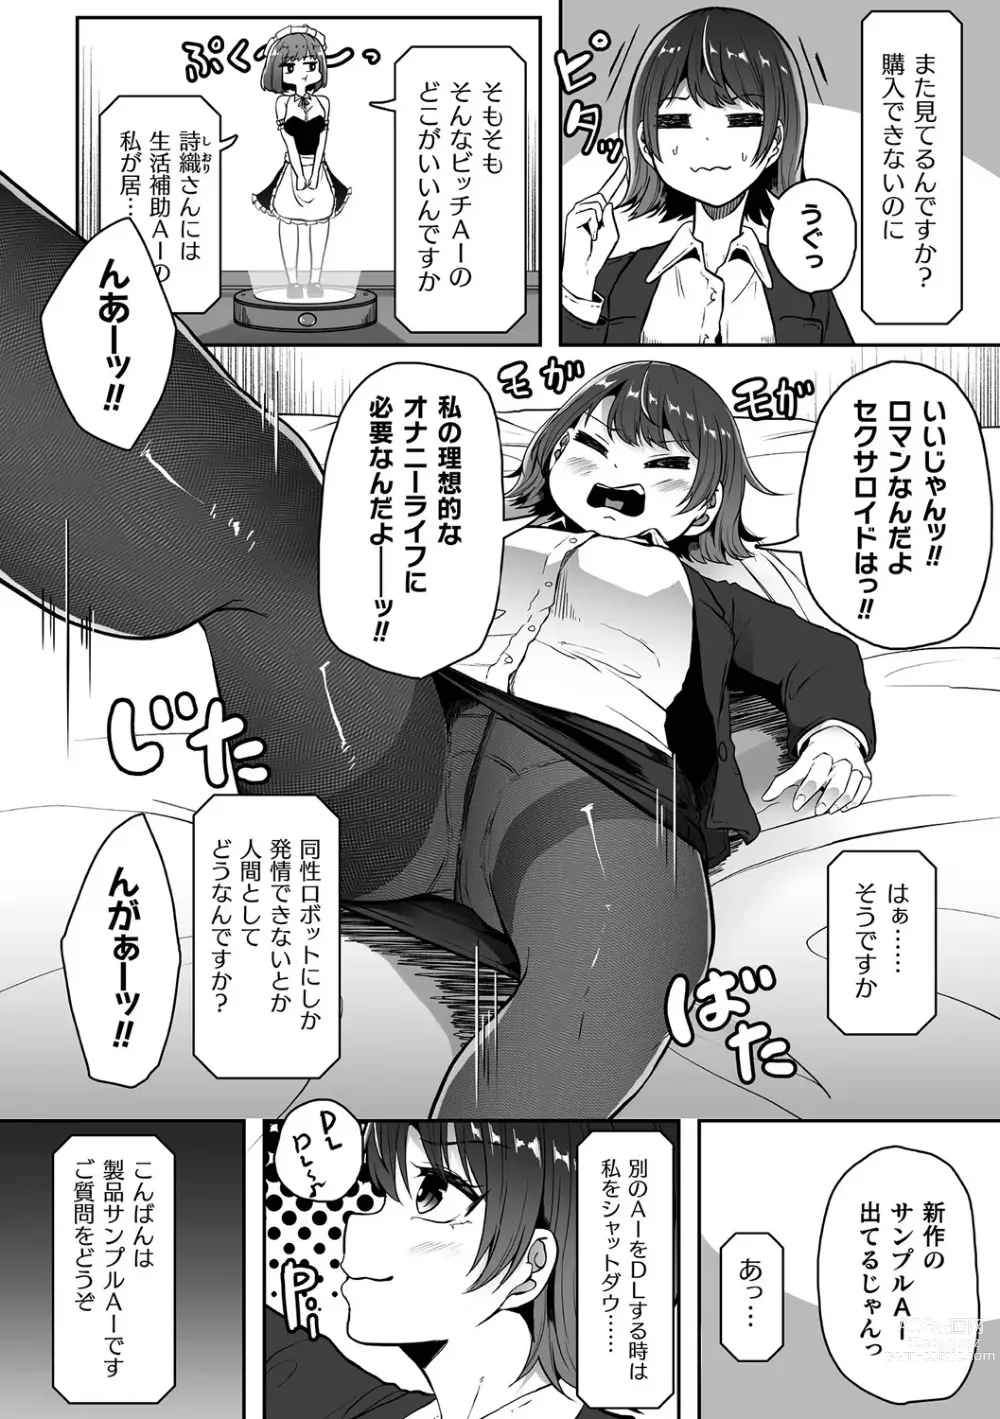 Page 26 of manga Bessatsu Comic Unreal AI ni Wakaraserareru Jinrui Hen Vol. 1